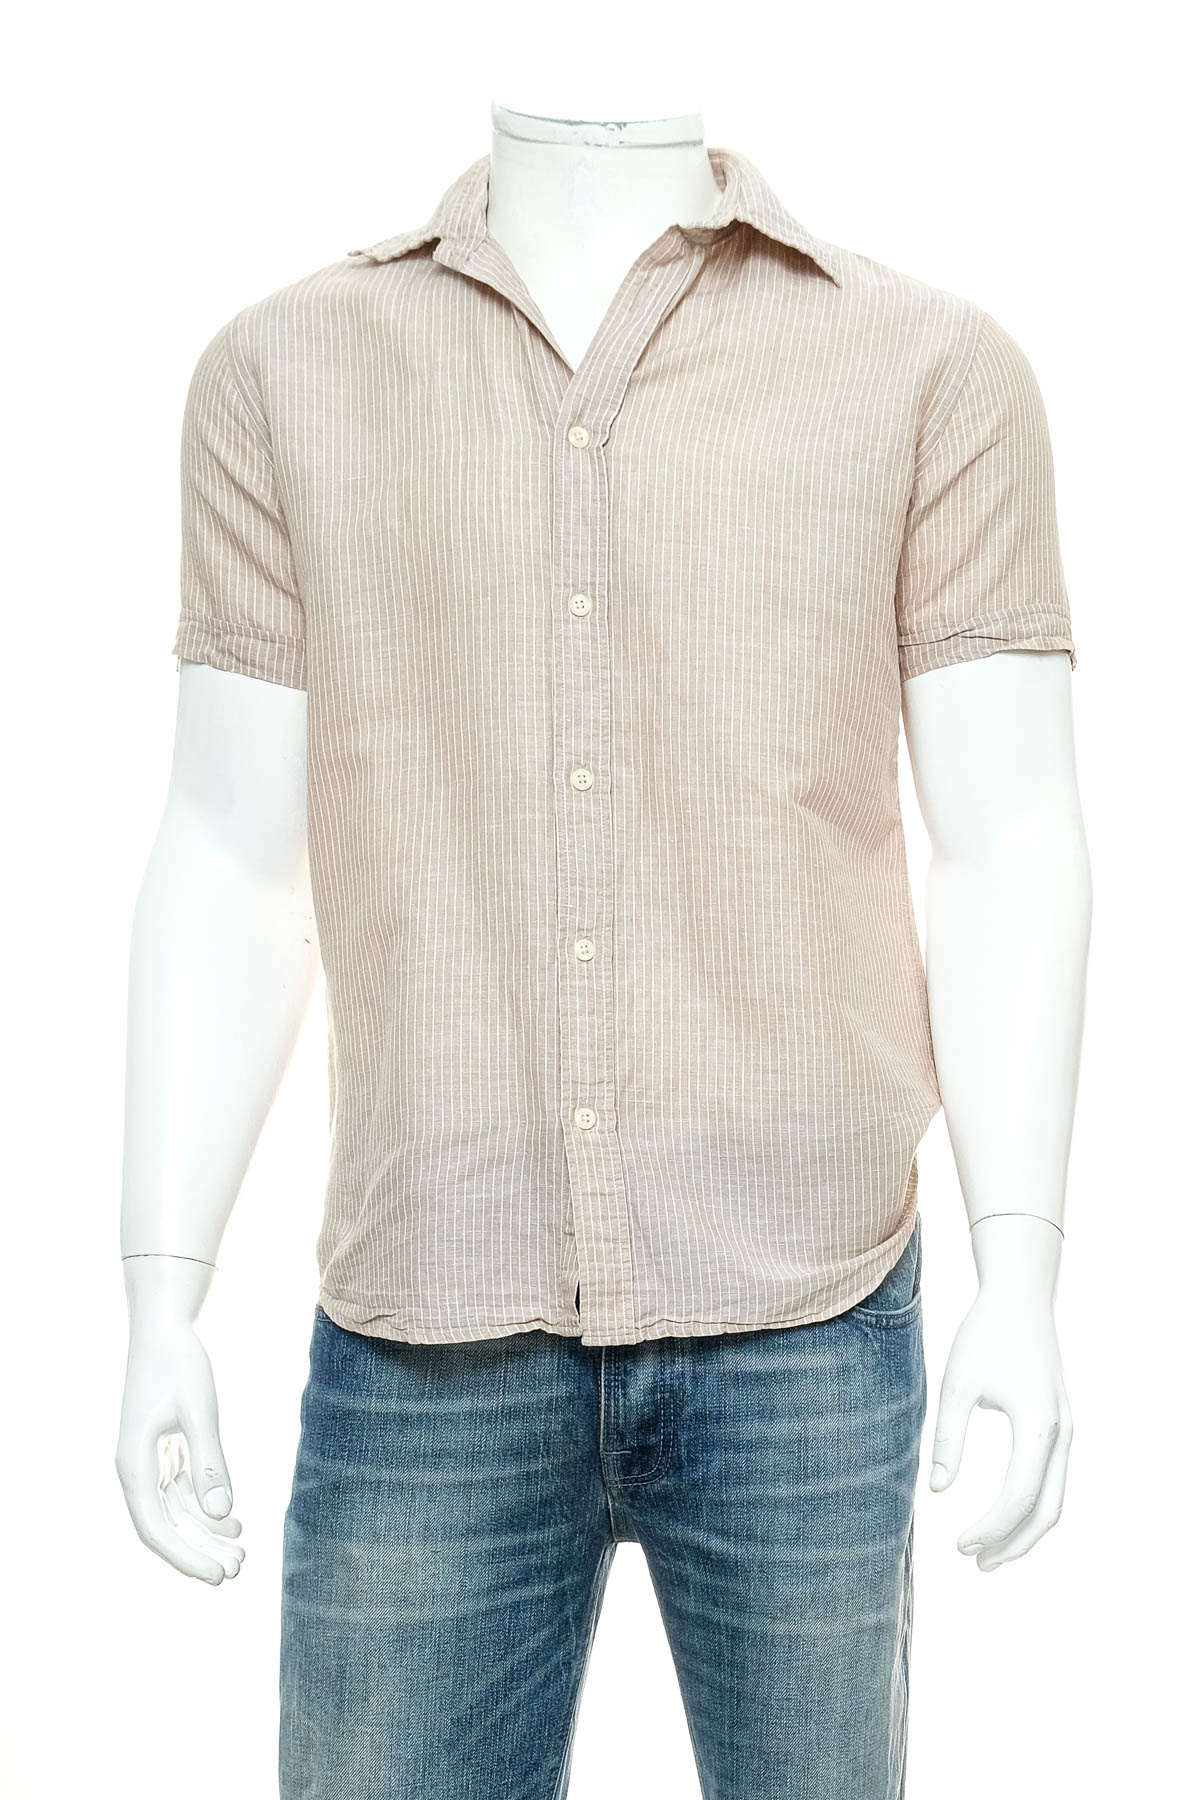 Ανδρικό πουκάμισο - OVS casual - 0